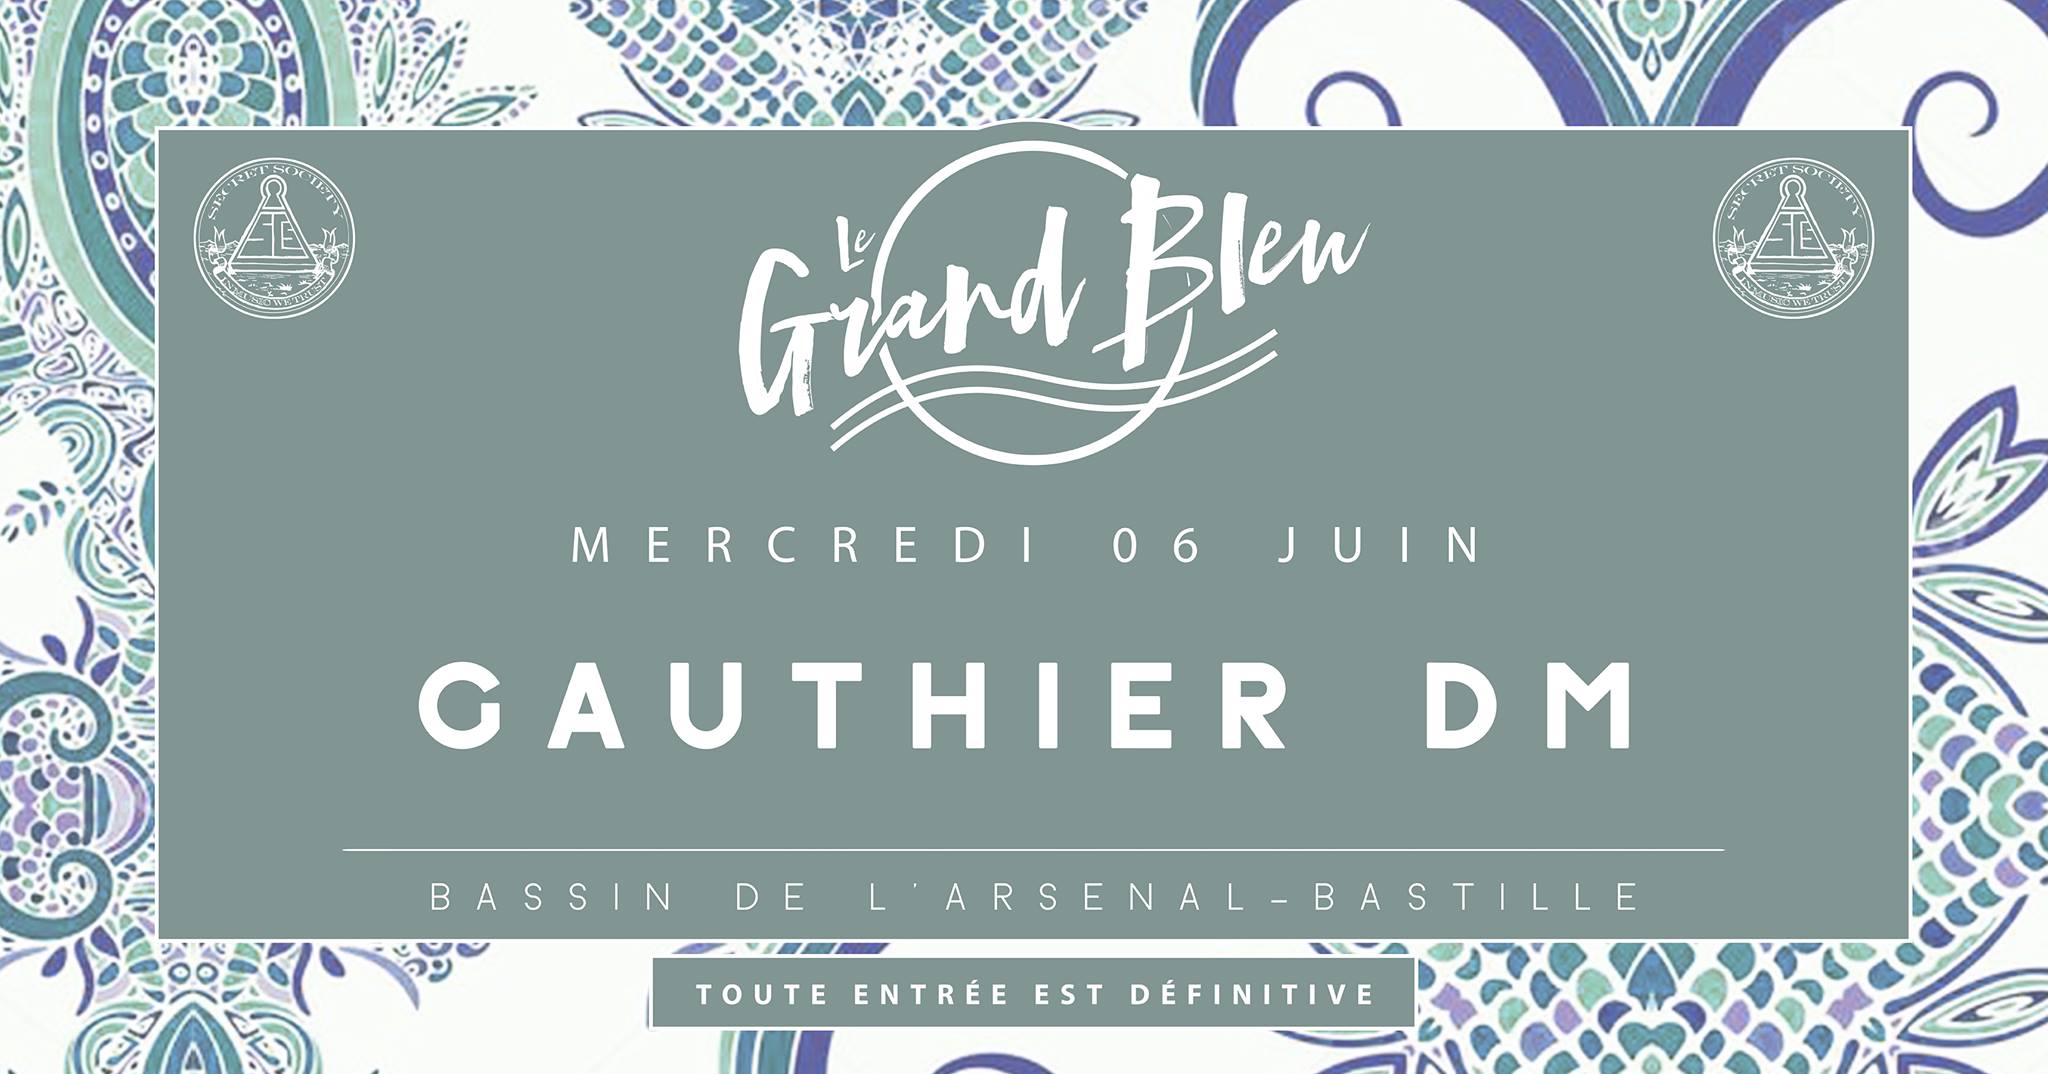 Gauthier DM - @Grand Bleu